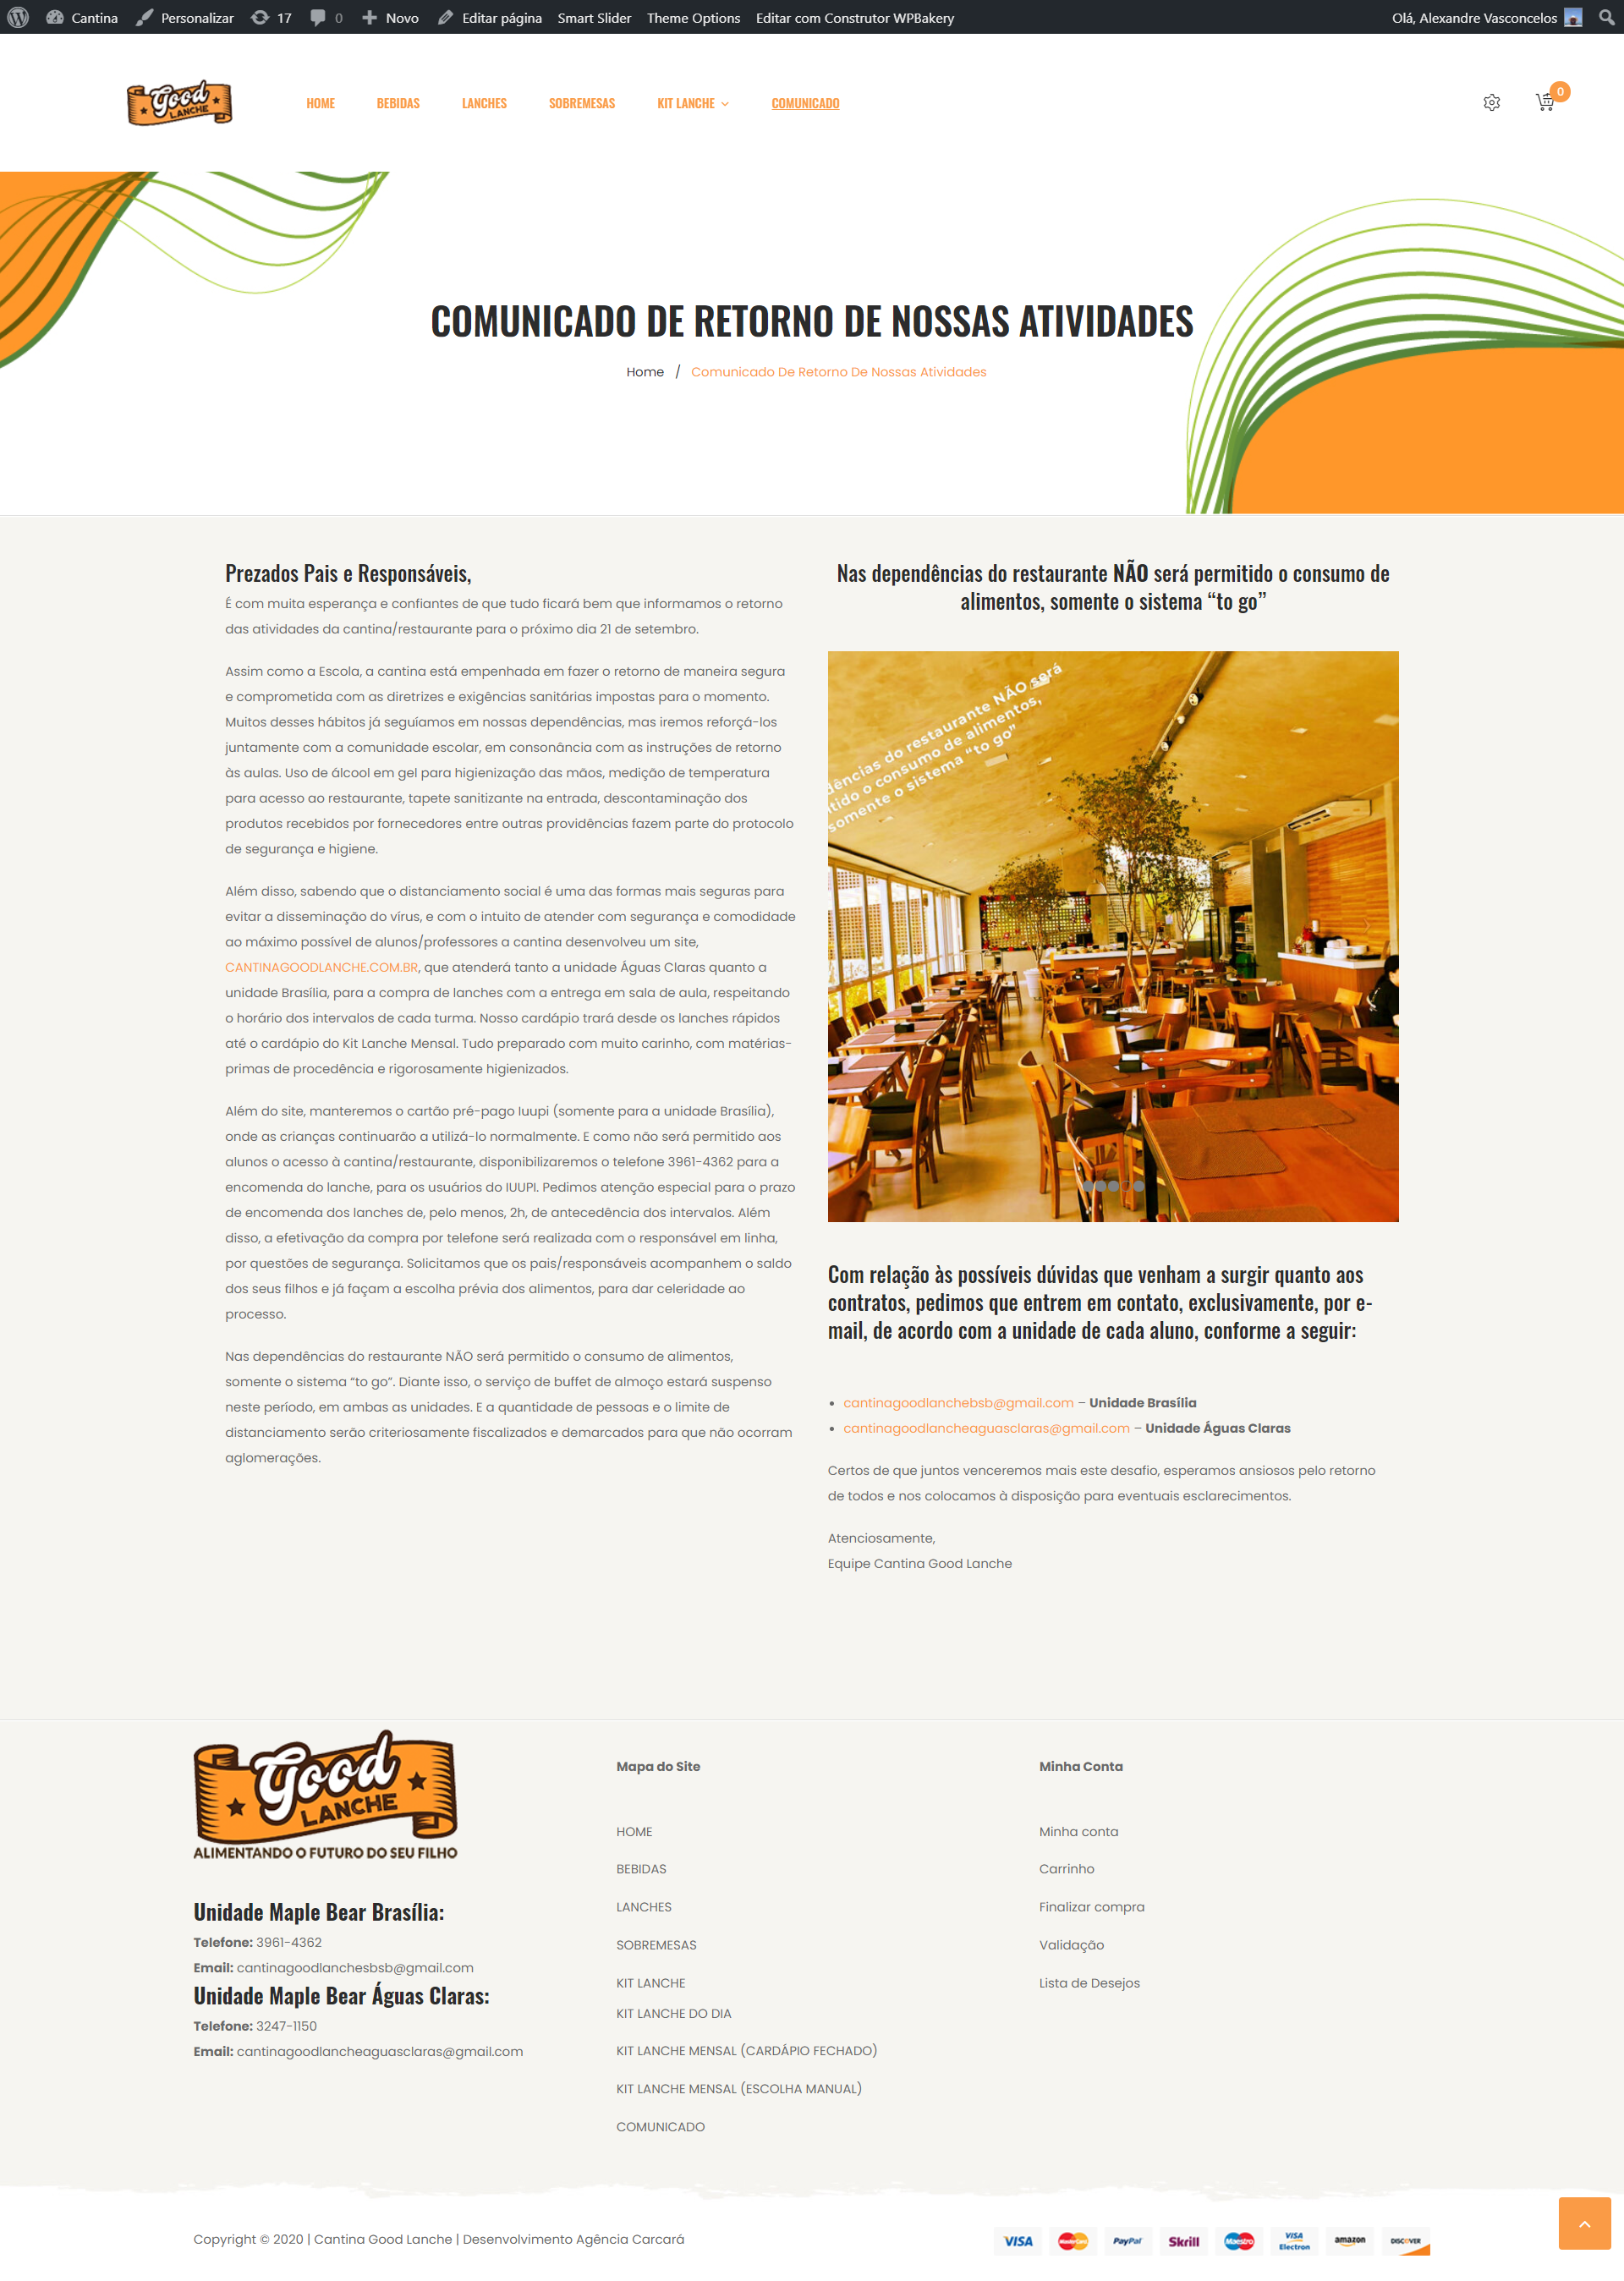 Criação de Loja virtual ou e-commerce para a Cantina Good Lanches da escola Maple Bear em Brasília